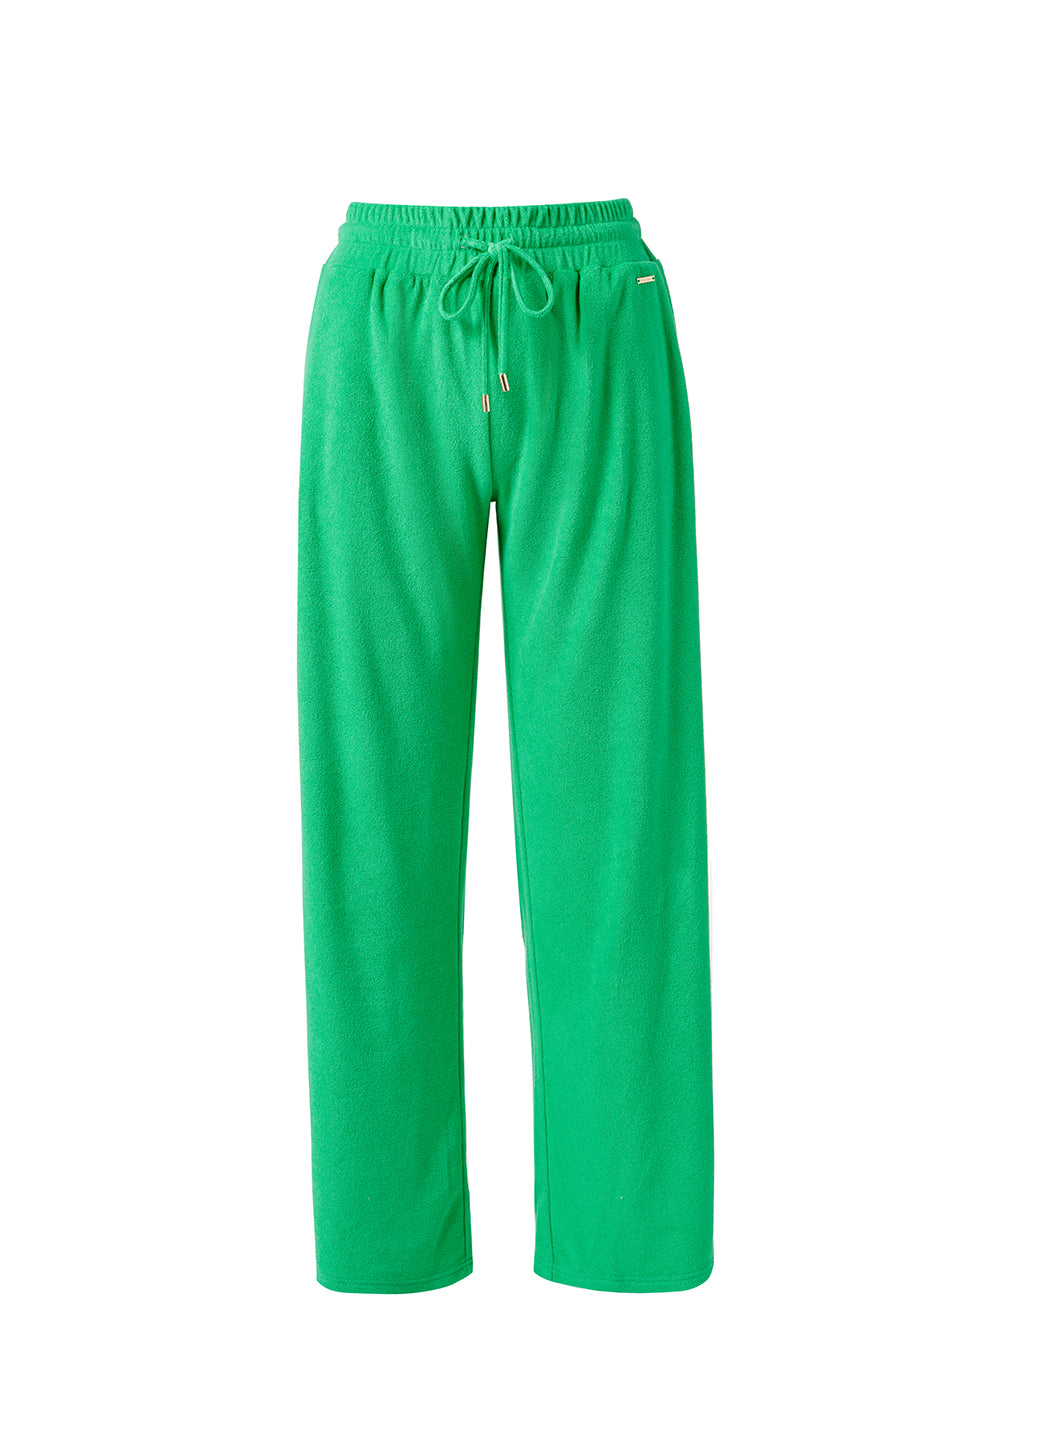 betty-green-trouser_cutouts